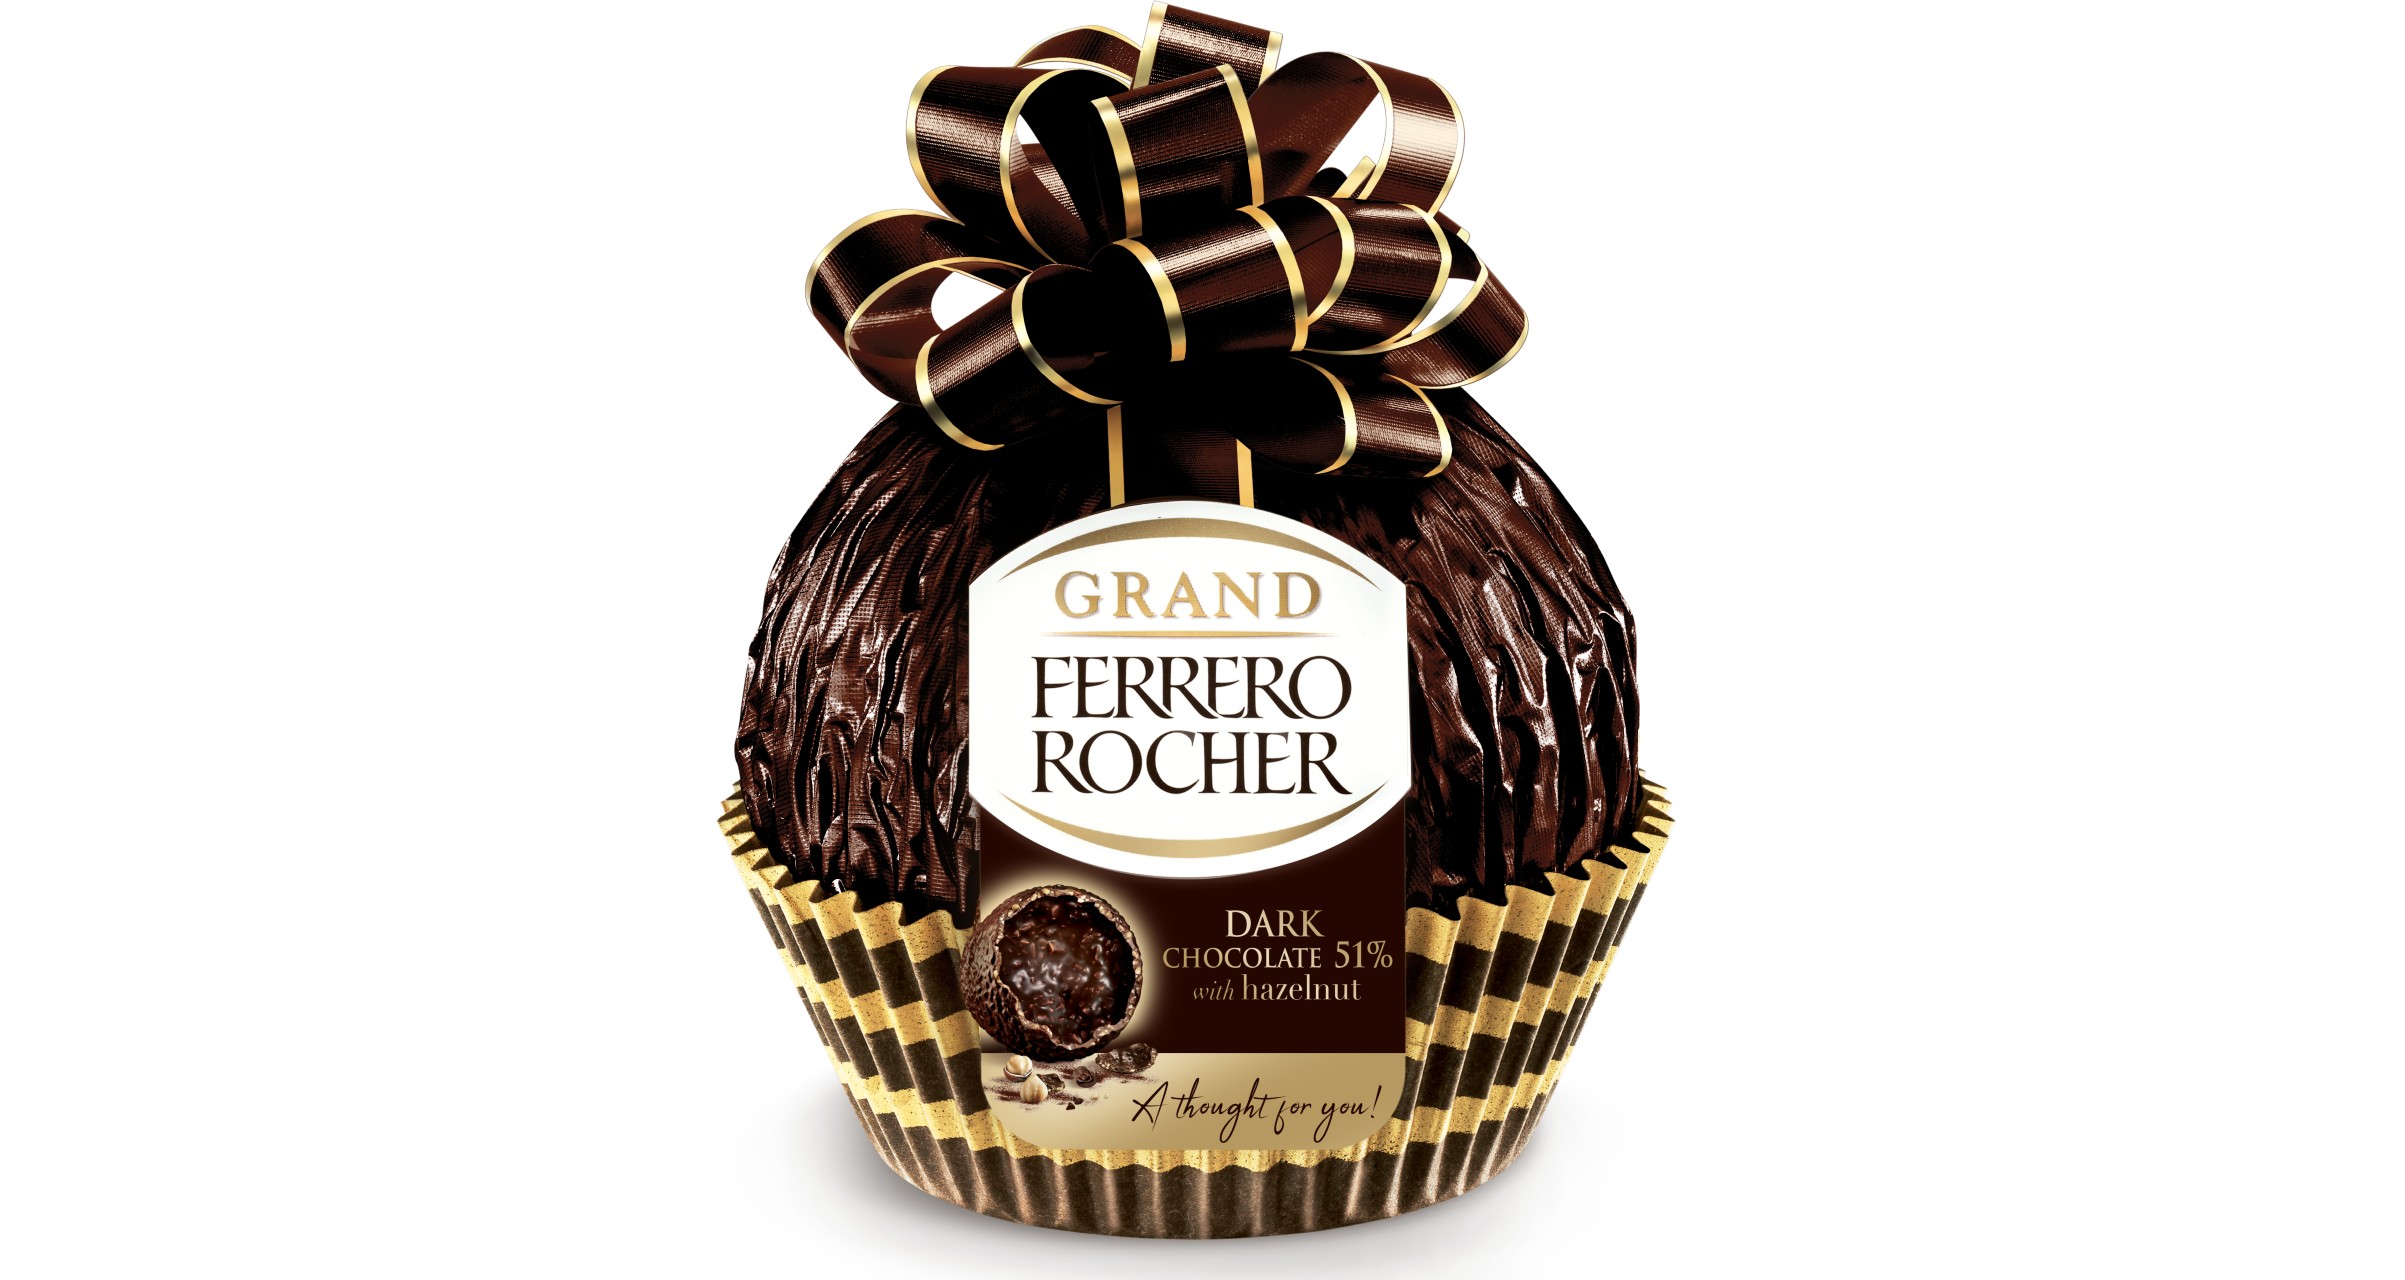 Ferrero Grand Ferrero Rocher Review